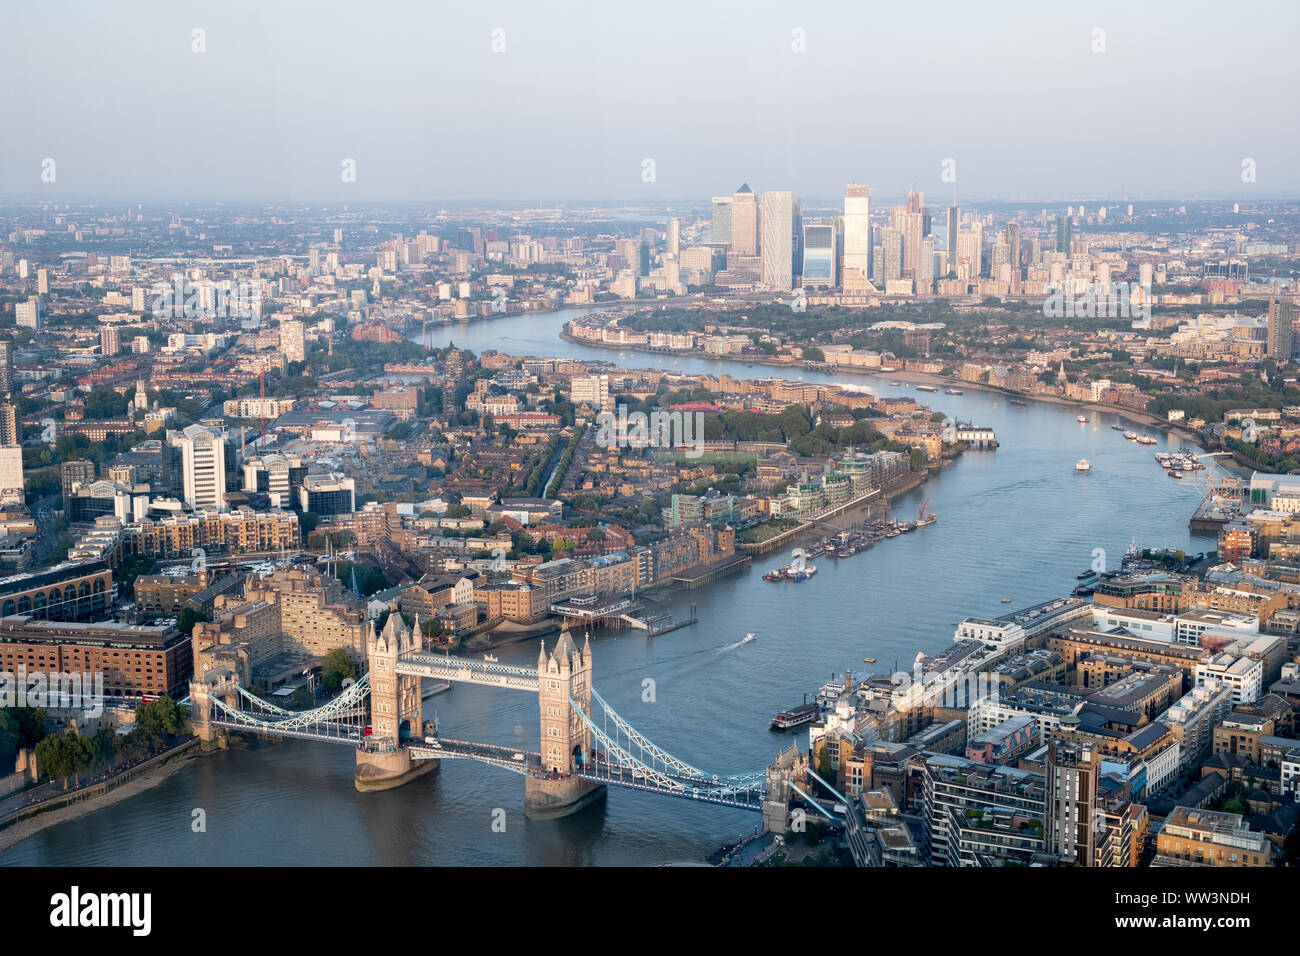 Août 2019. Vue aérienne de la Tamise, à l'est, avec le Tower Bridge au premier plan et de Canary Wharf en arrière-plan. Banque D'Images